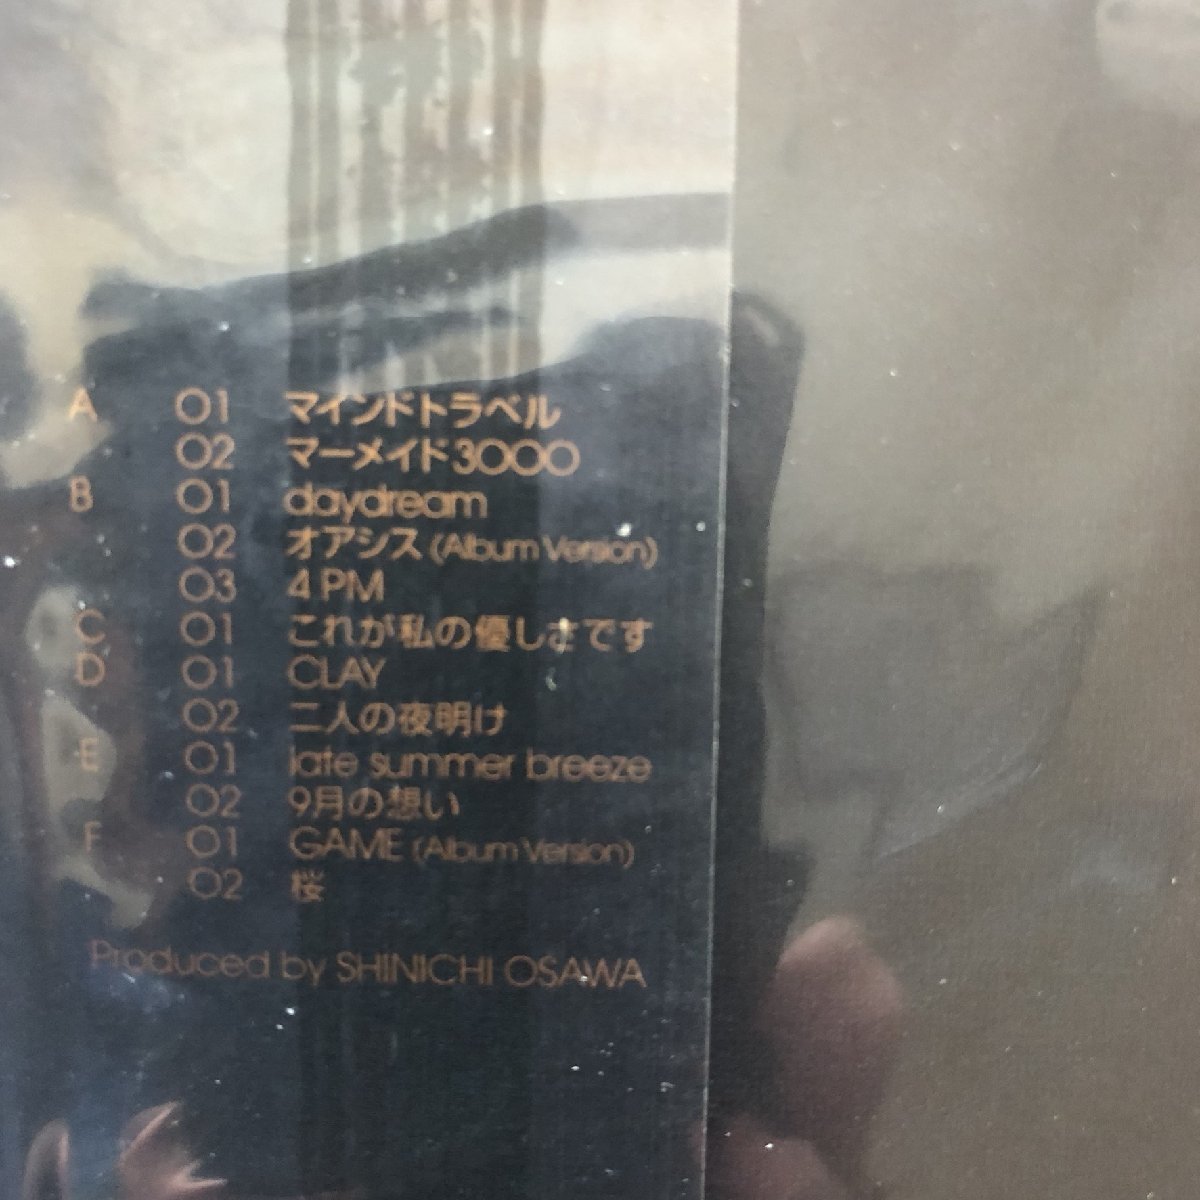 未開封新品 バード Bird 2000年 3枚組LPレコード マインドトラベル Mindtravel 国内盤 Japanese soul R&B 再販盤 プロデュース大沢伸一_画像9